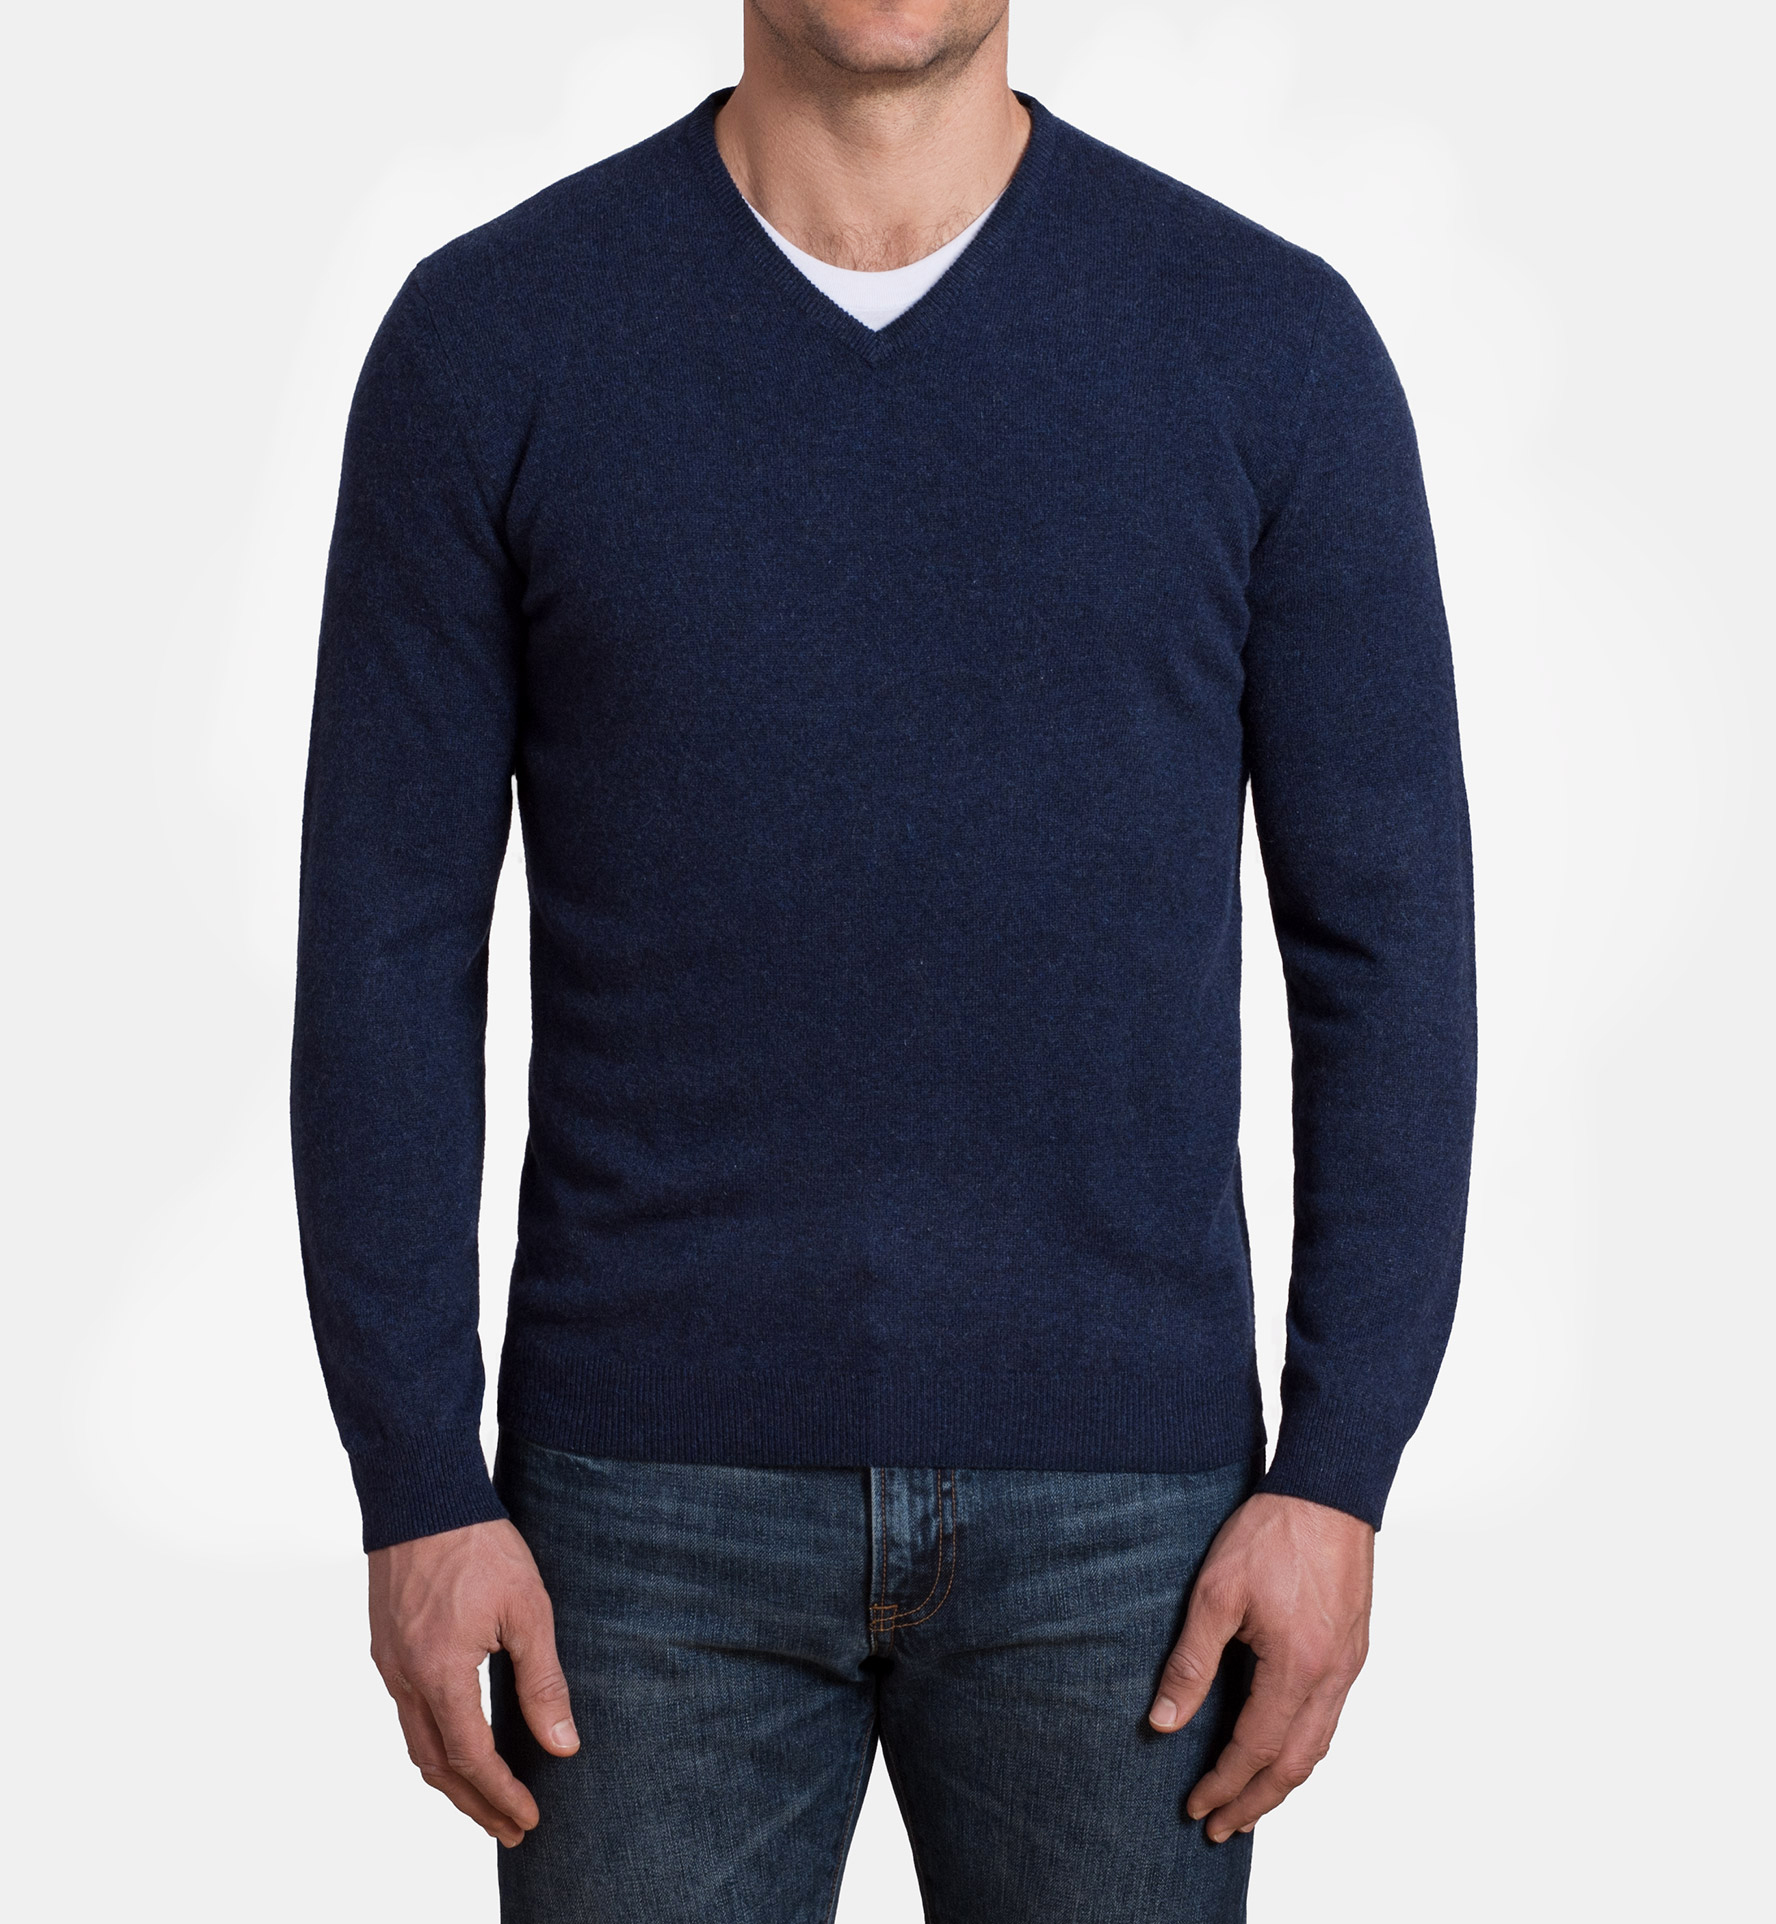 Navy Melange Cashmere V-Neck Sweater by Proper Cloth